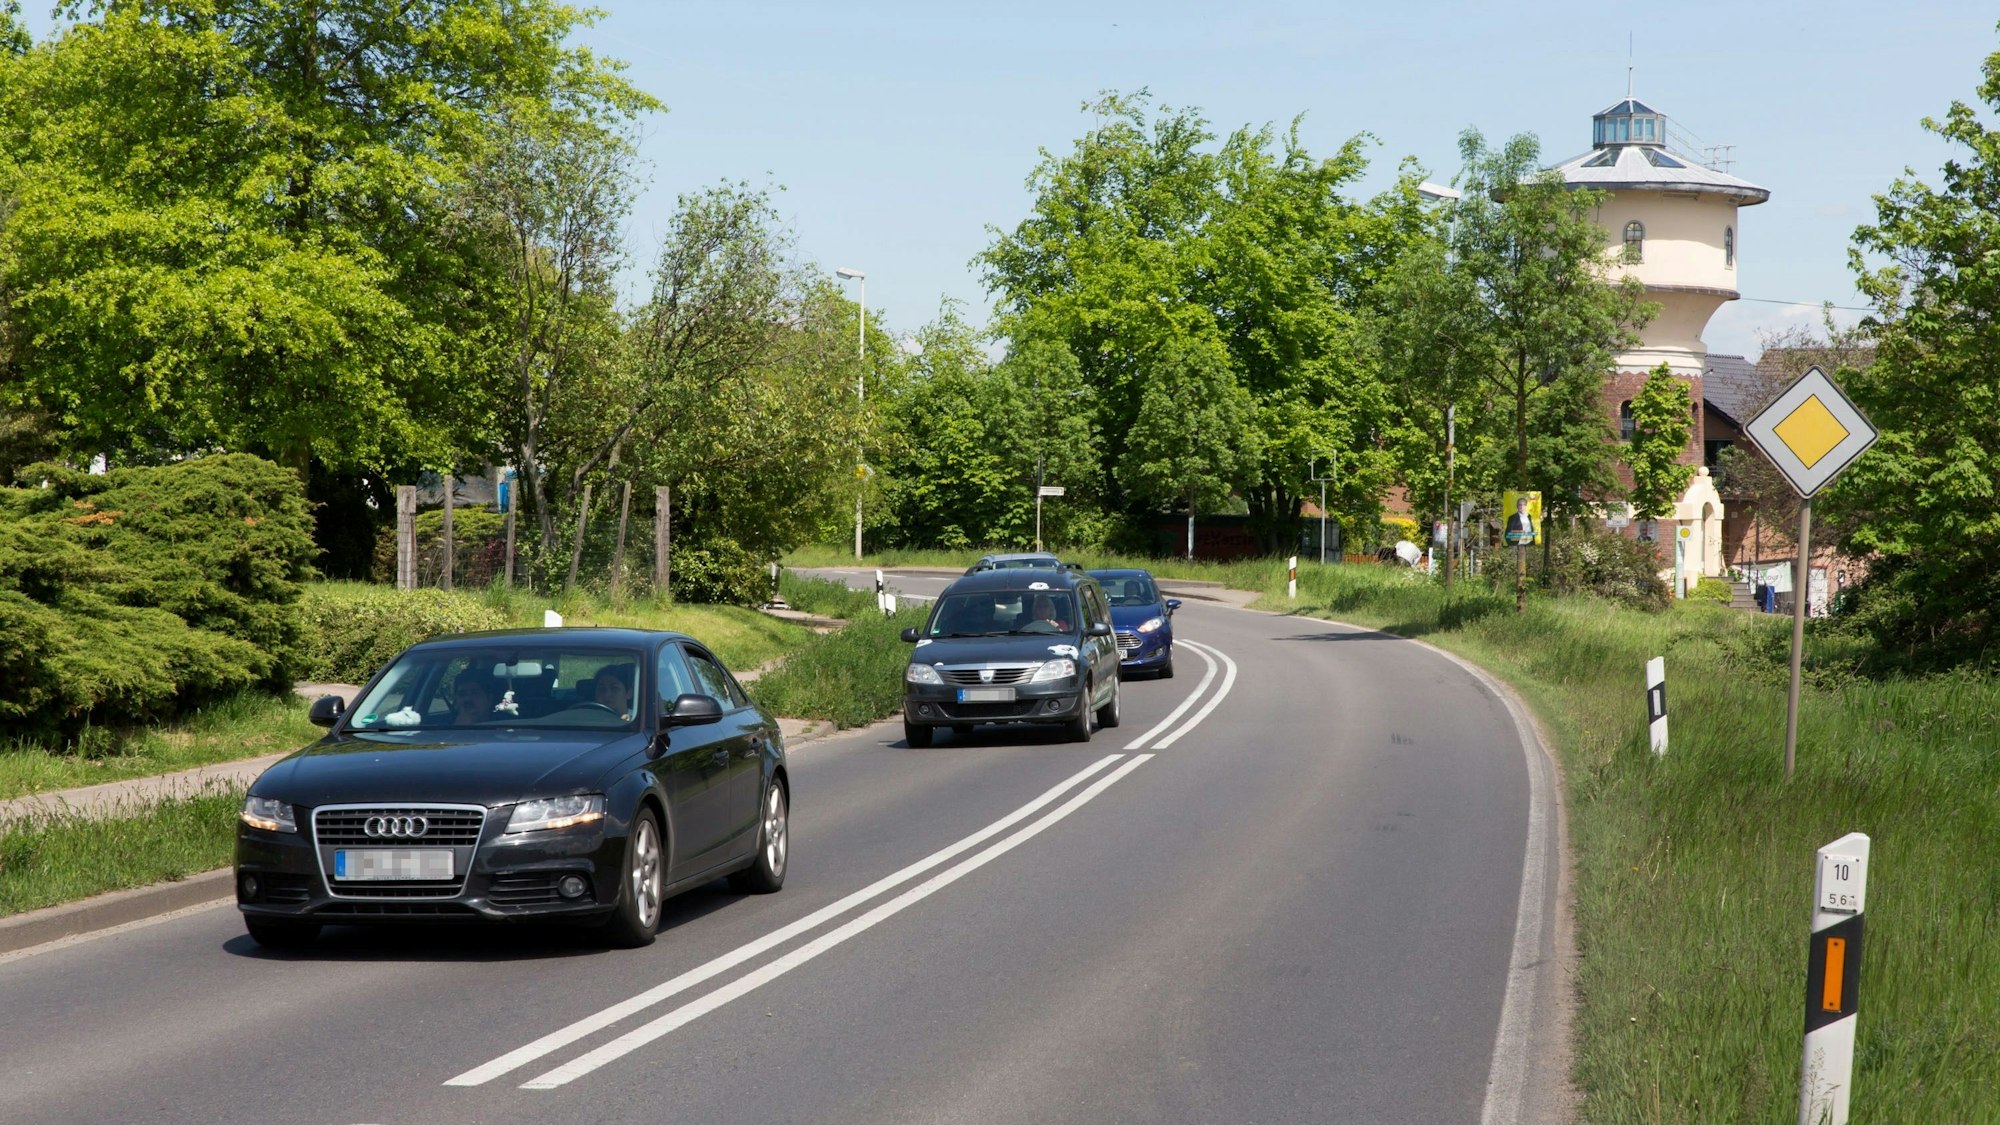 Auf der L 182 bei Brenig, auf dem Rankenberg, herrscht immer viel Fahrzeugverkehr.